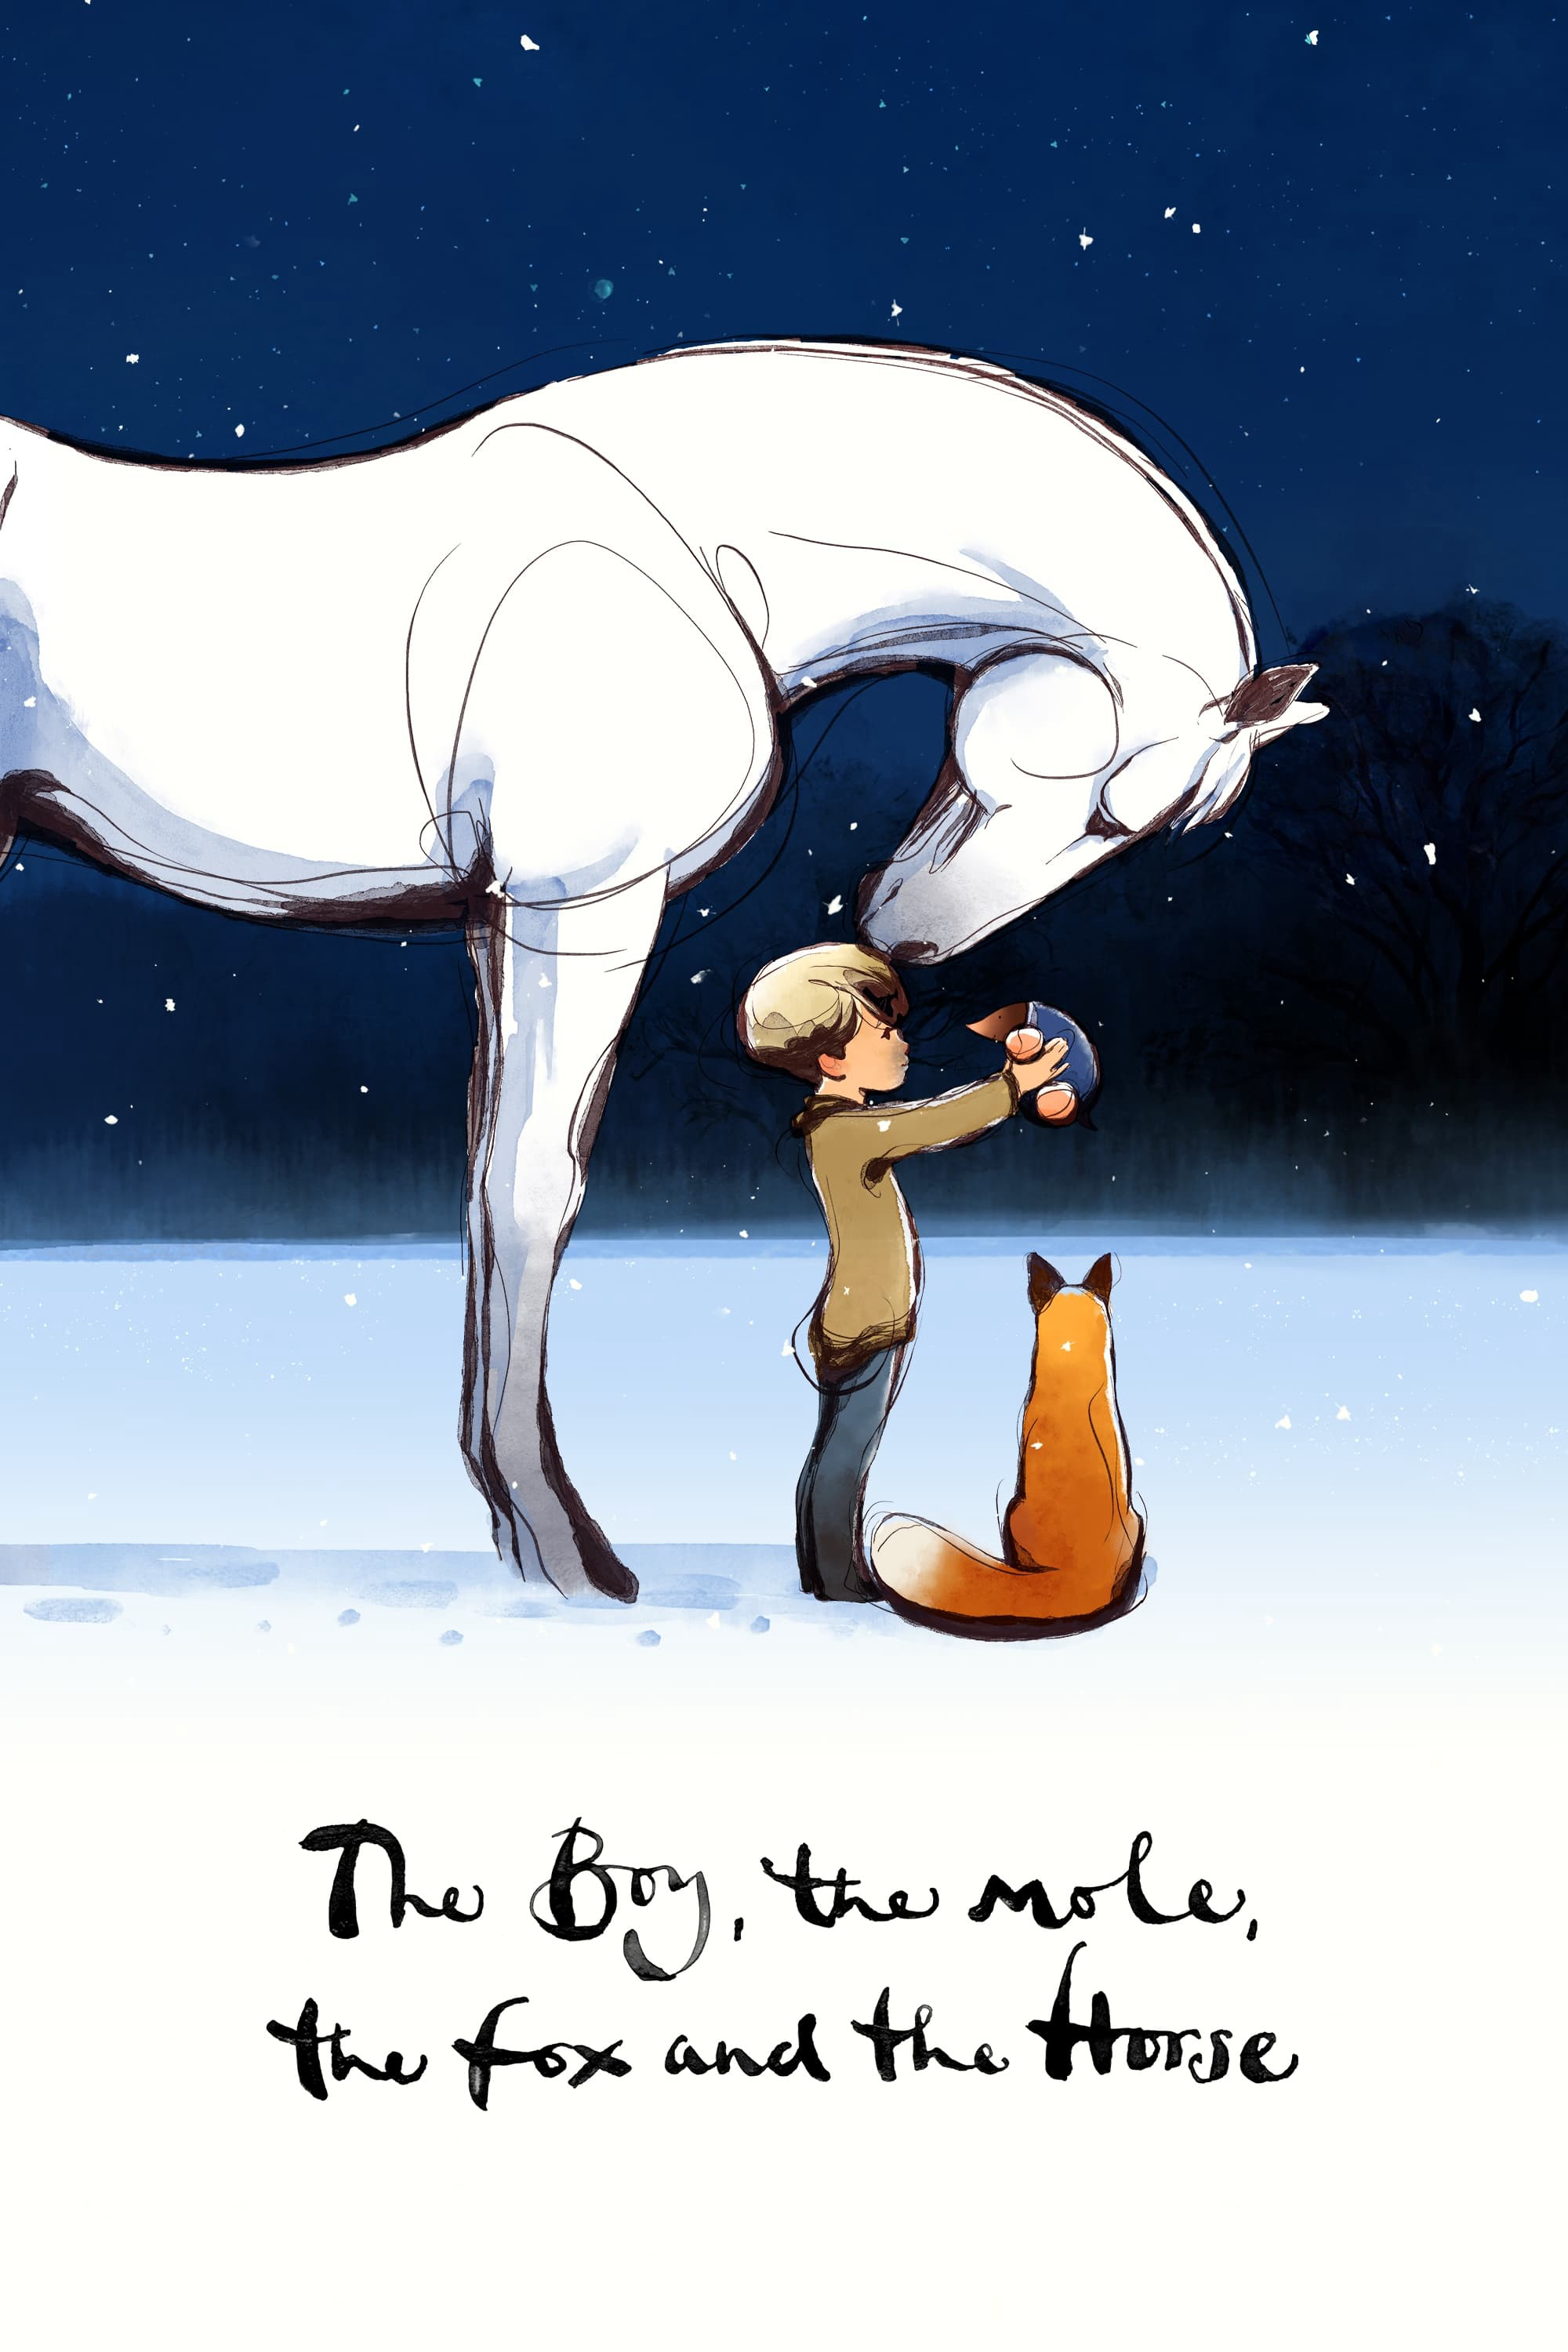 Poster Phim Cậu bé, Chuột chũi, Cáo và Ngựa (The Boy, the Mole, the Fox and the Horse)